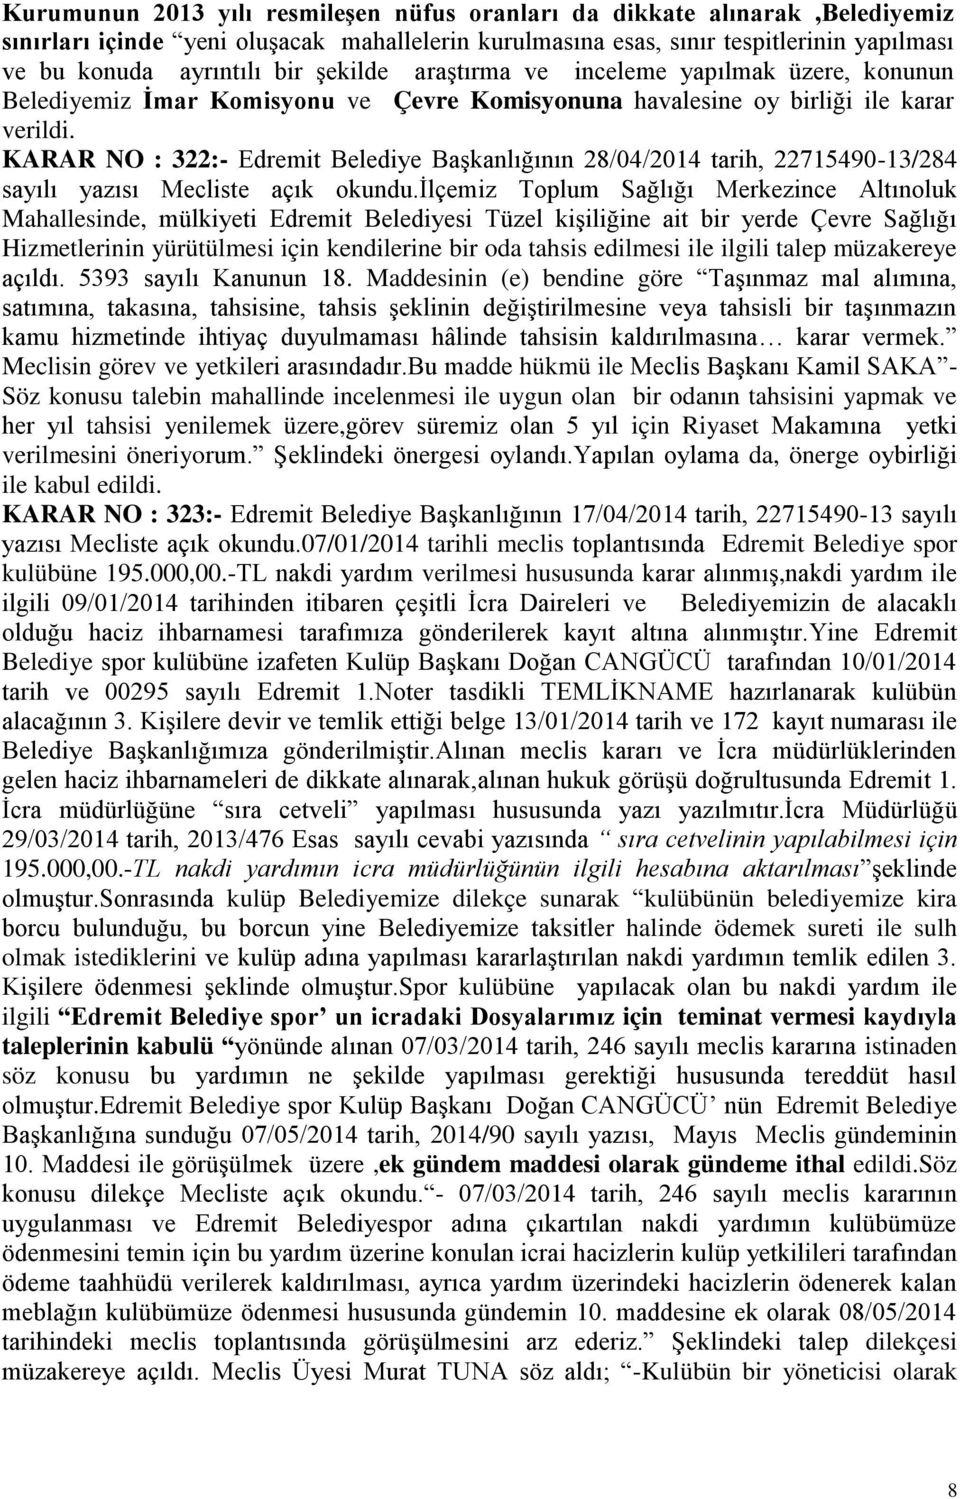 KARAR NO : 322:- Edremit Belediye BaĢkanlığının 28/04/2014 tarih, 22715490-13/284 sayılı yazısı Mecliste açık okundu.